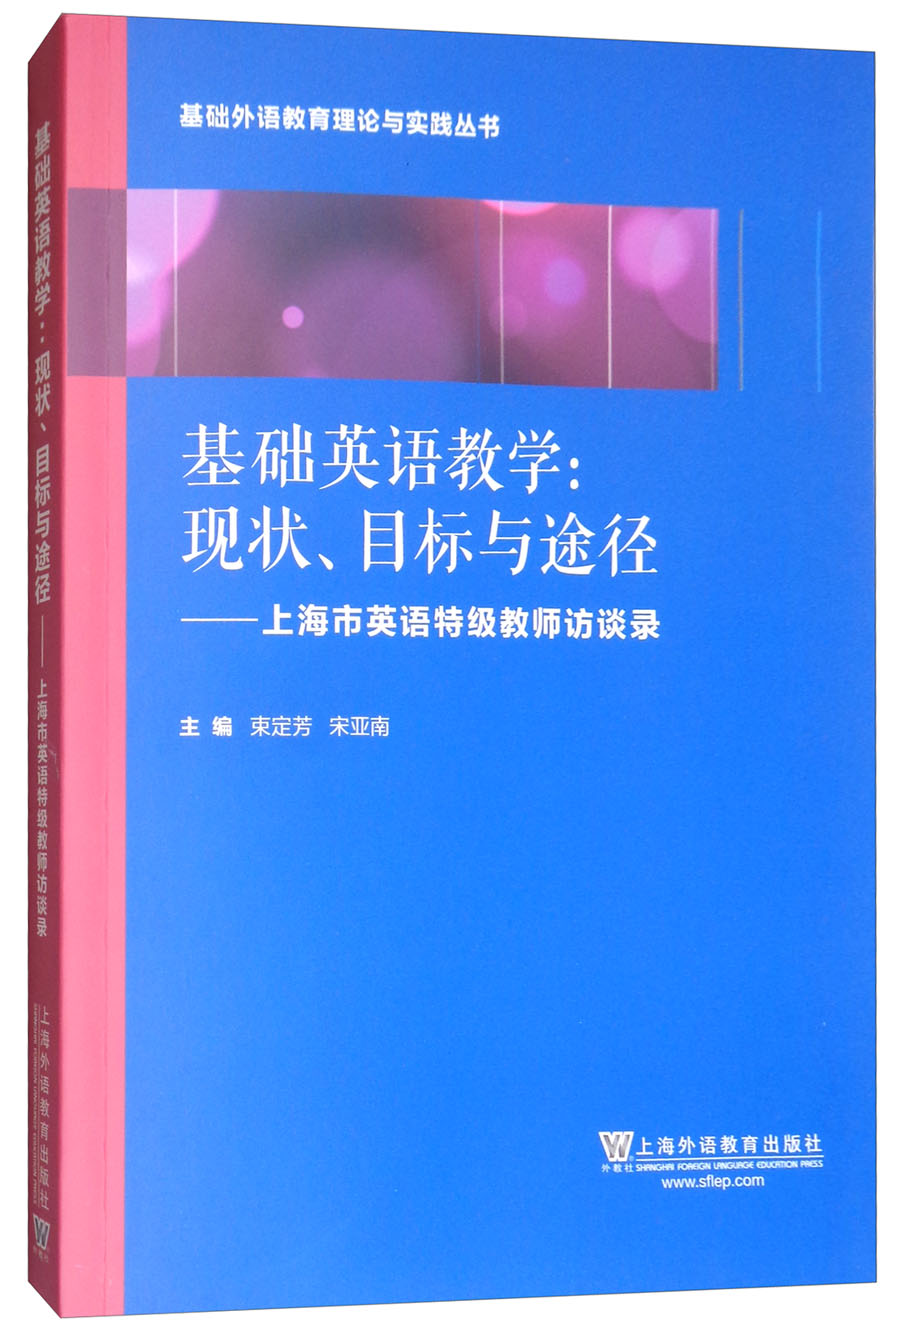 基础外语教育理论与实践丛书·基础英语教学·现状、目标与途径：上海英语特级教师访谈录 pdf格式下载